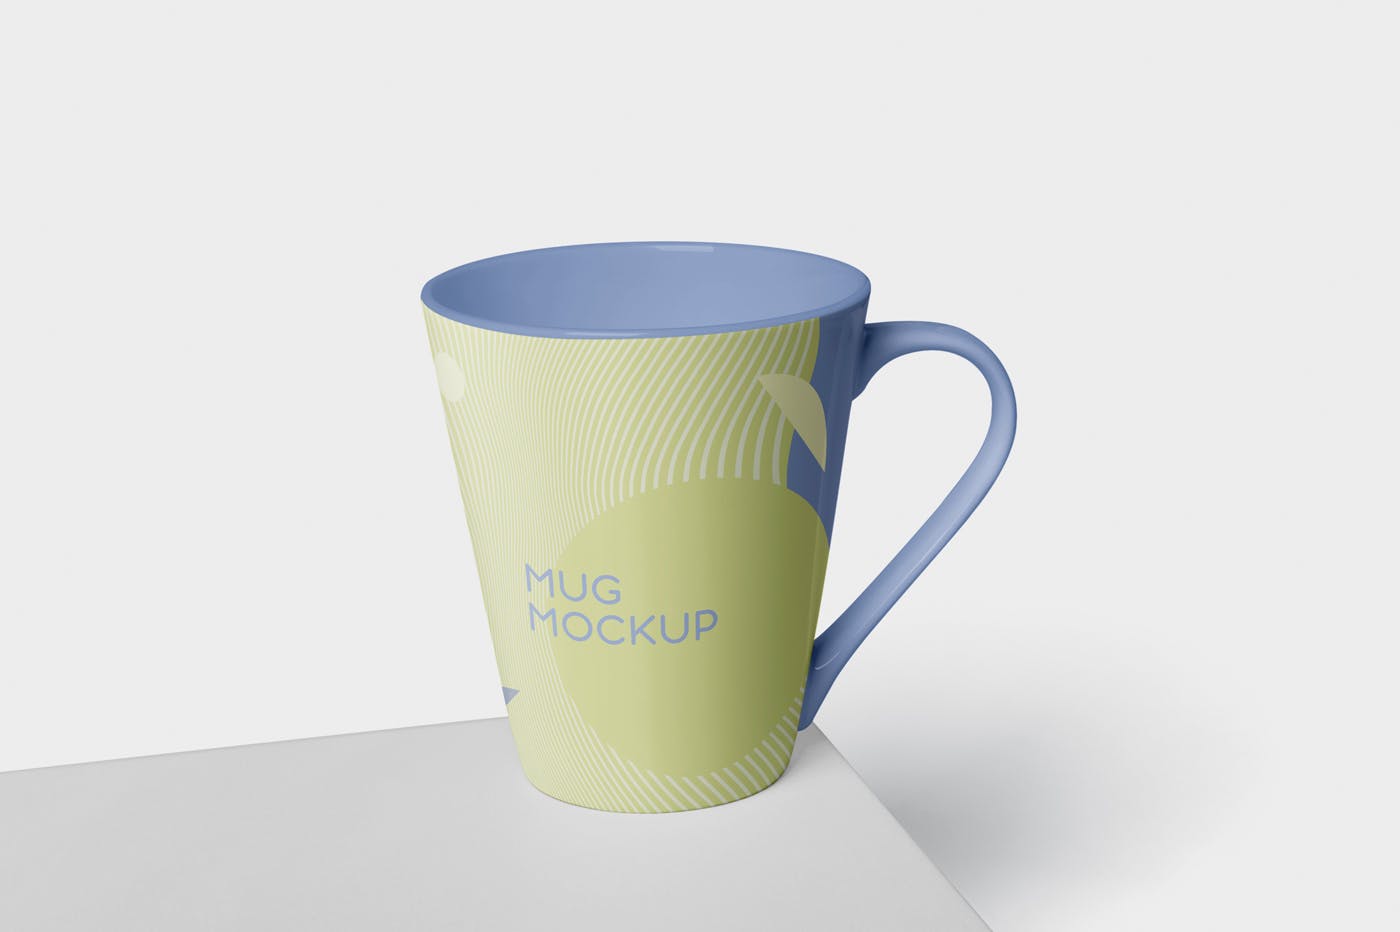 锥形马克杯图案设计素材库精选 Mug Mockup – Cone Shaped插图(2)